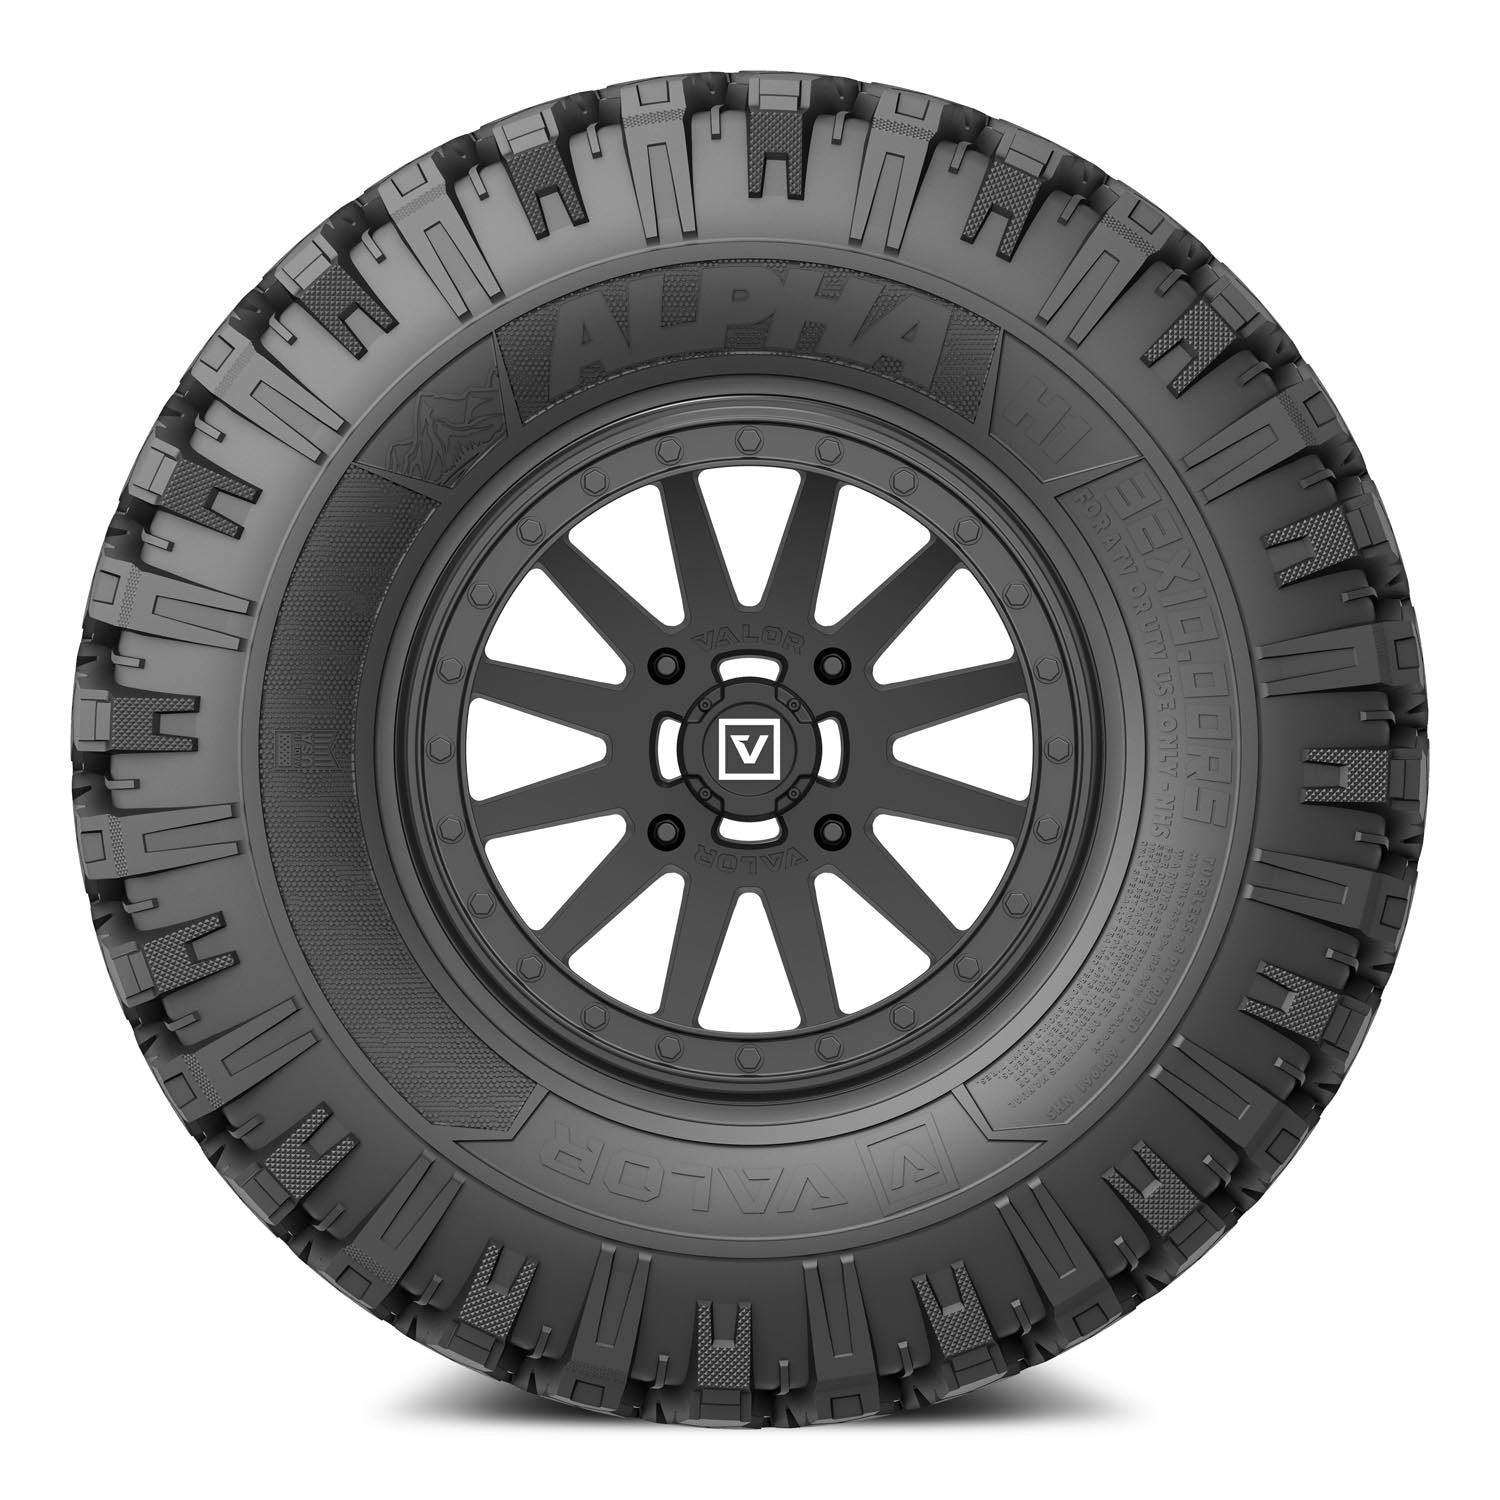 Valor Offroad UTV Tires and wheels - V05 Beadlock UTV Wheel on Alpha UTV Tire